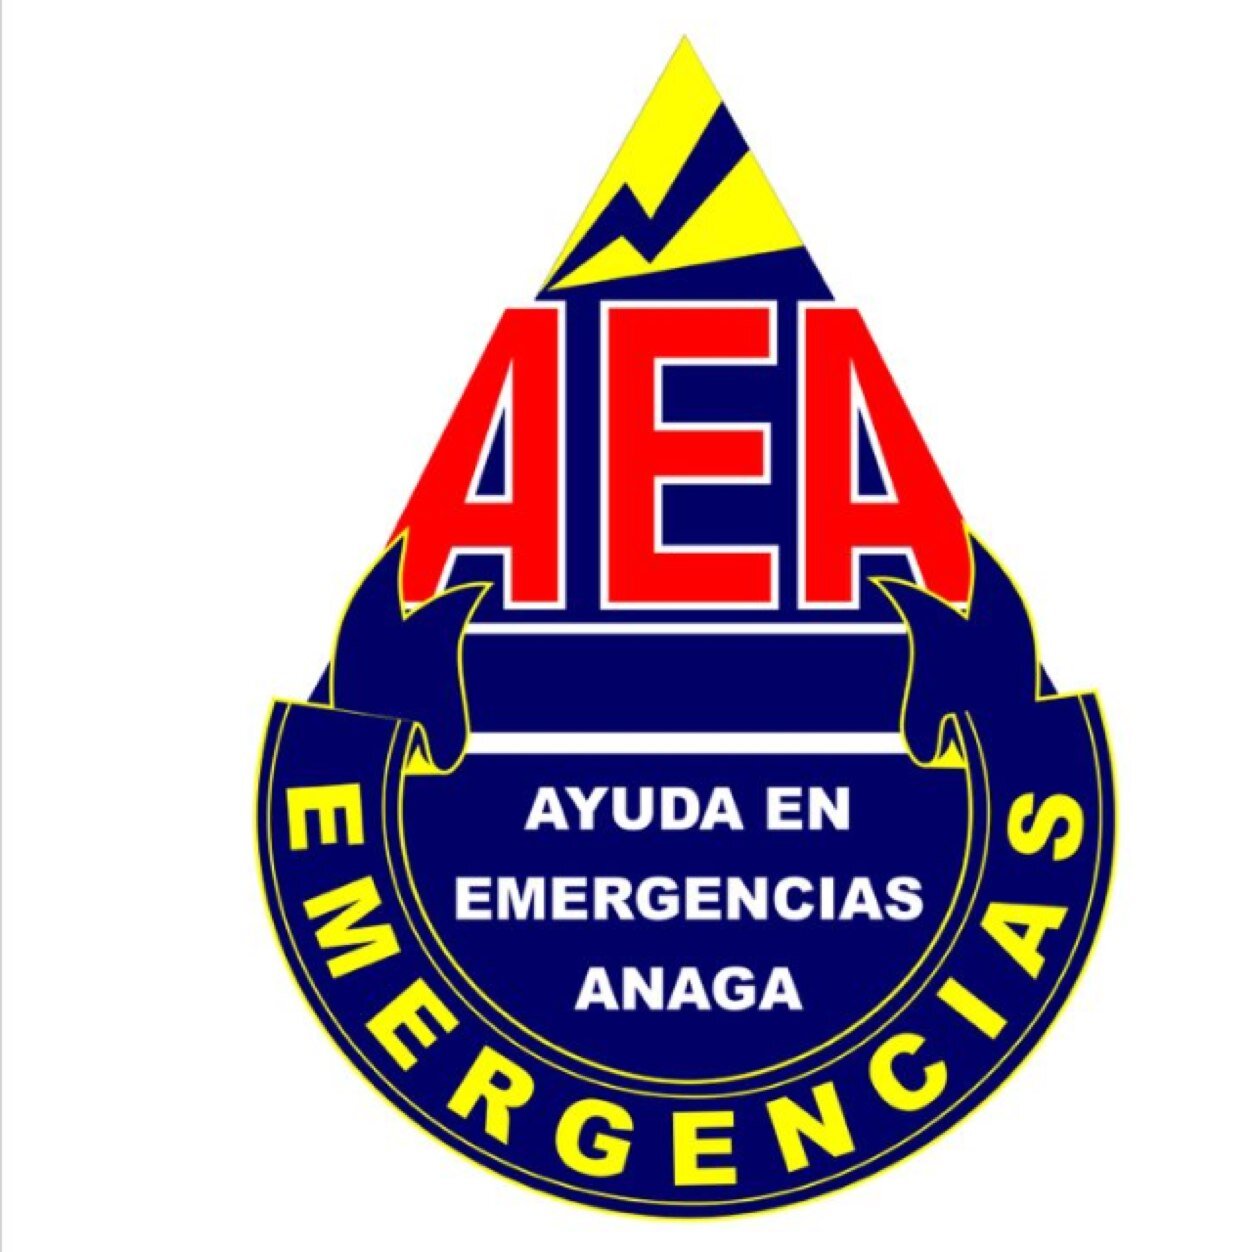 AEA es una Asociación autorizada y registrada en el Gobierno Civil y a nivel Nacional con Número 18.533 y declarada de Utilidad Pública en Consejo de Ministros.